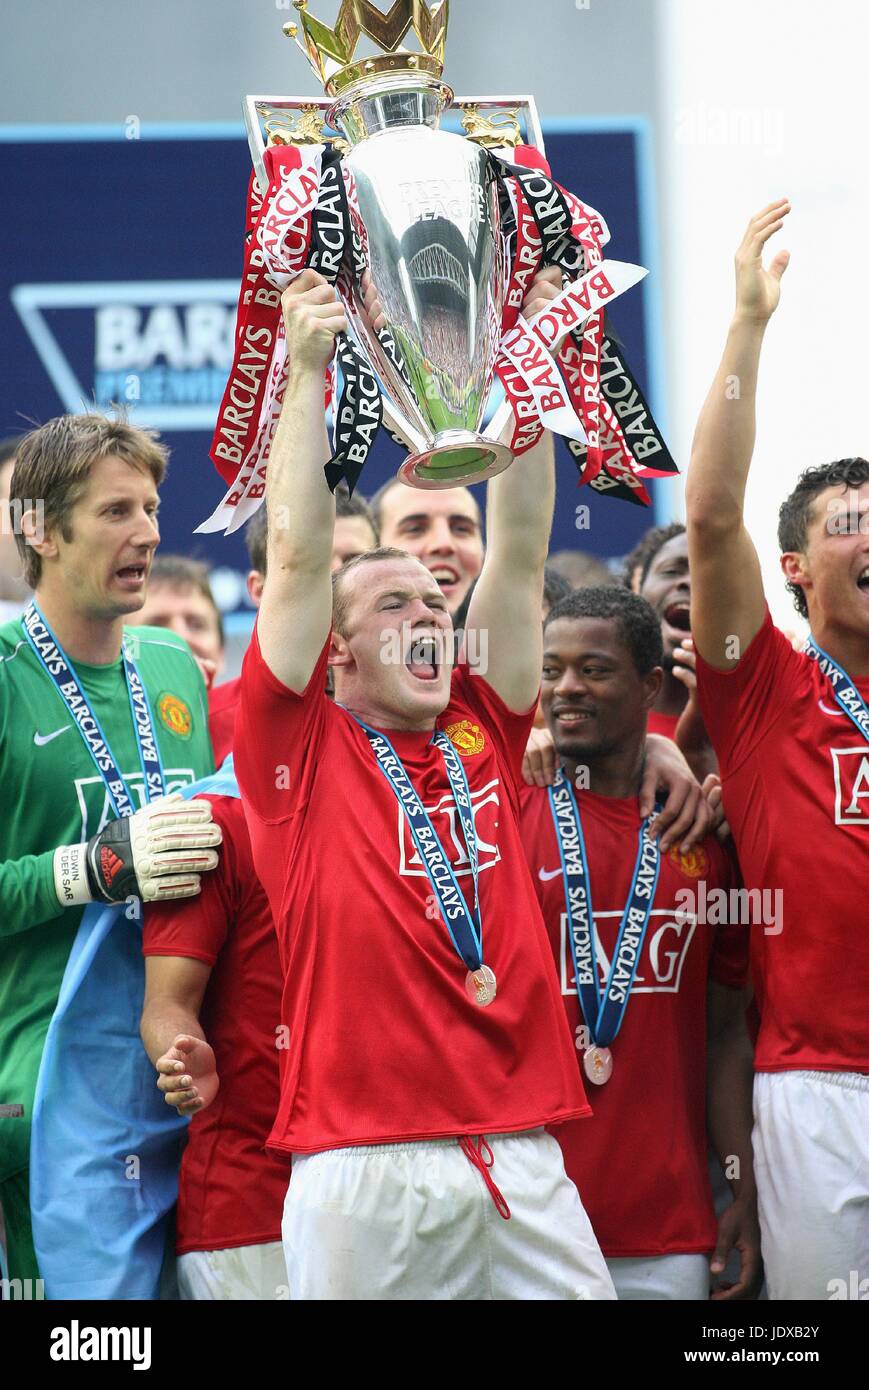 WAYNE ROONEY AVEC TROPHÉE, gagnants de la Barclays Premier League, Wigan 07/08 V MANCHESTER UNITED, 2008 Banque D'Images